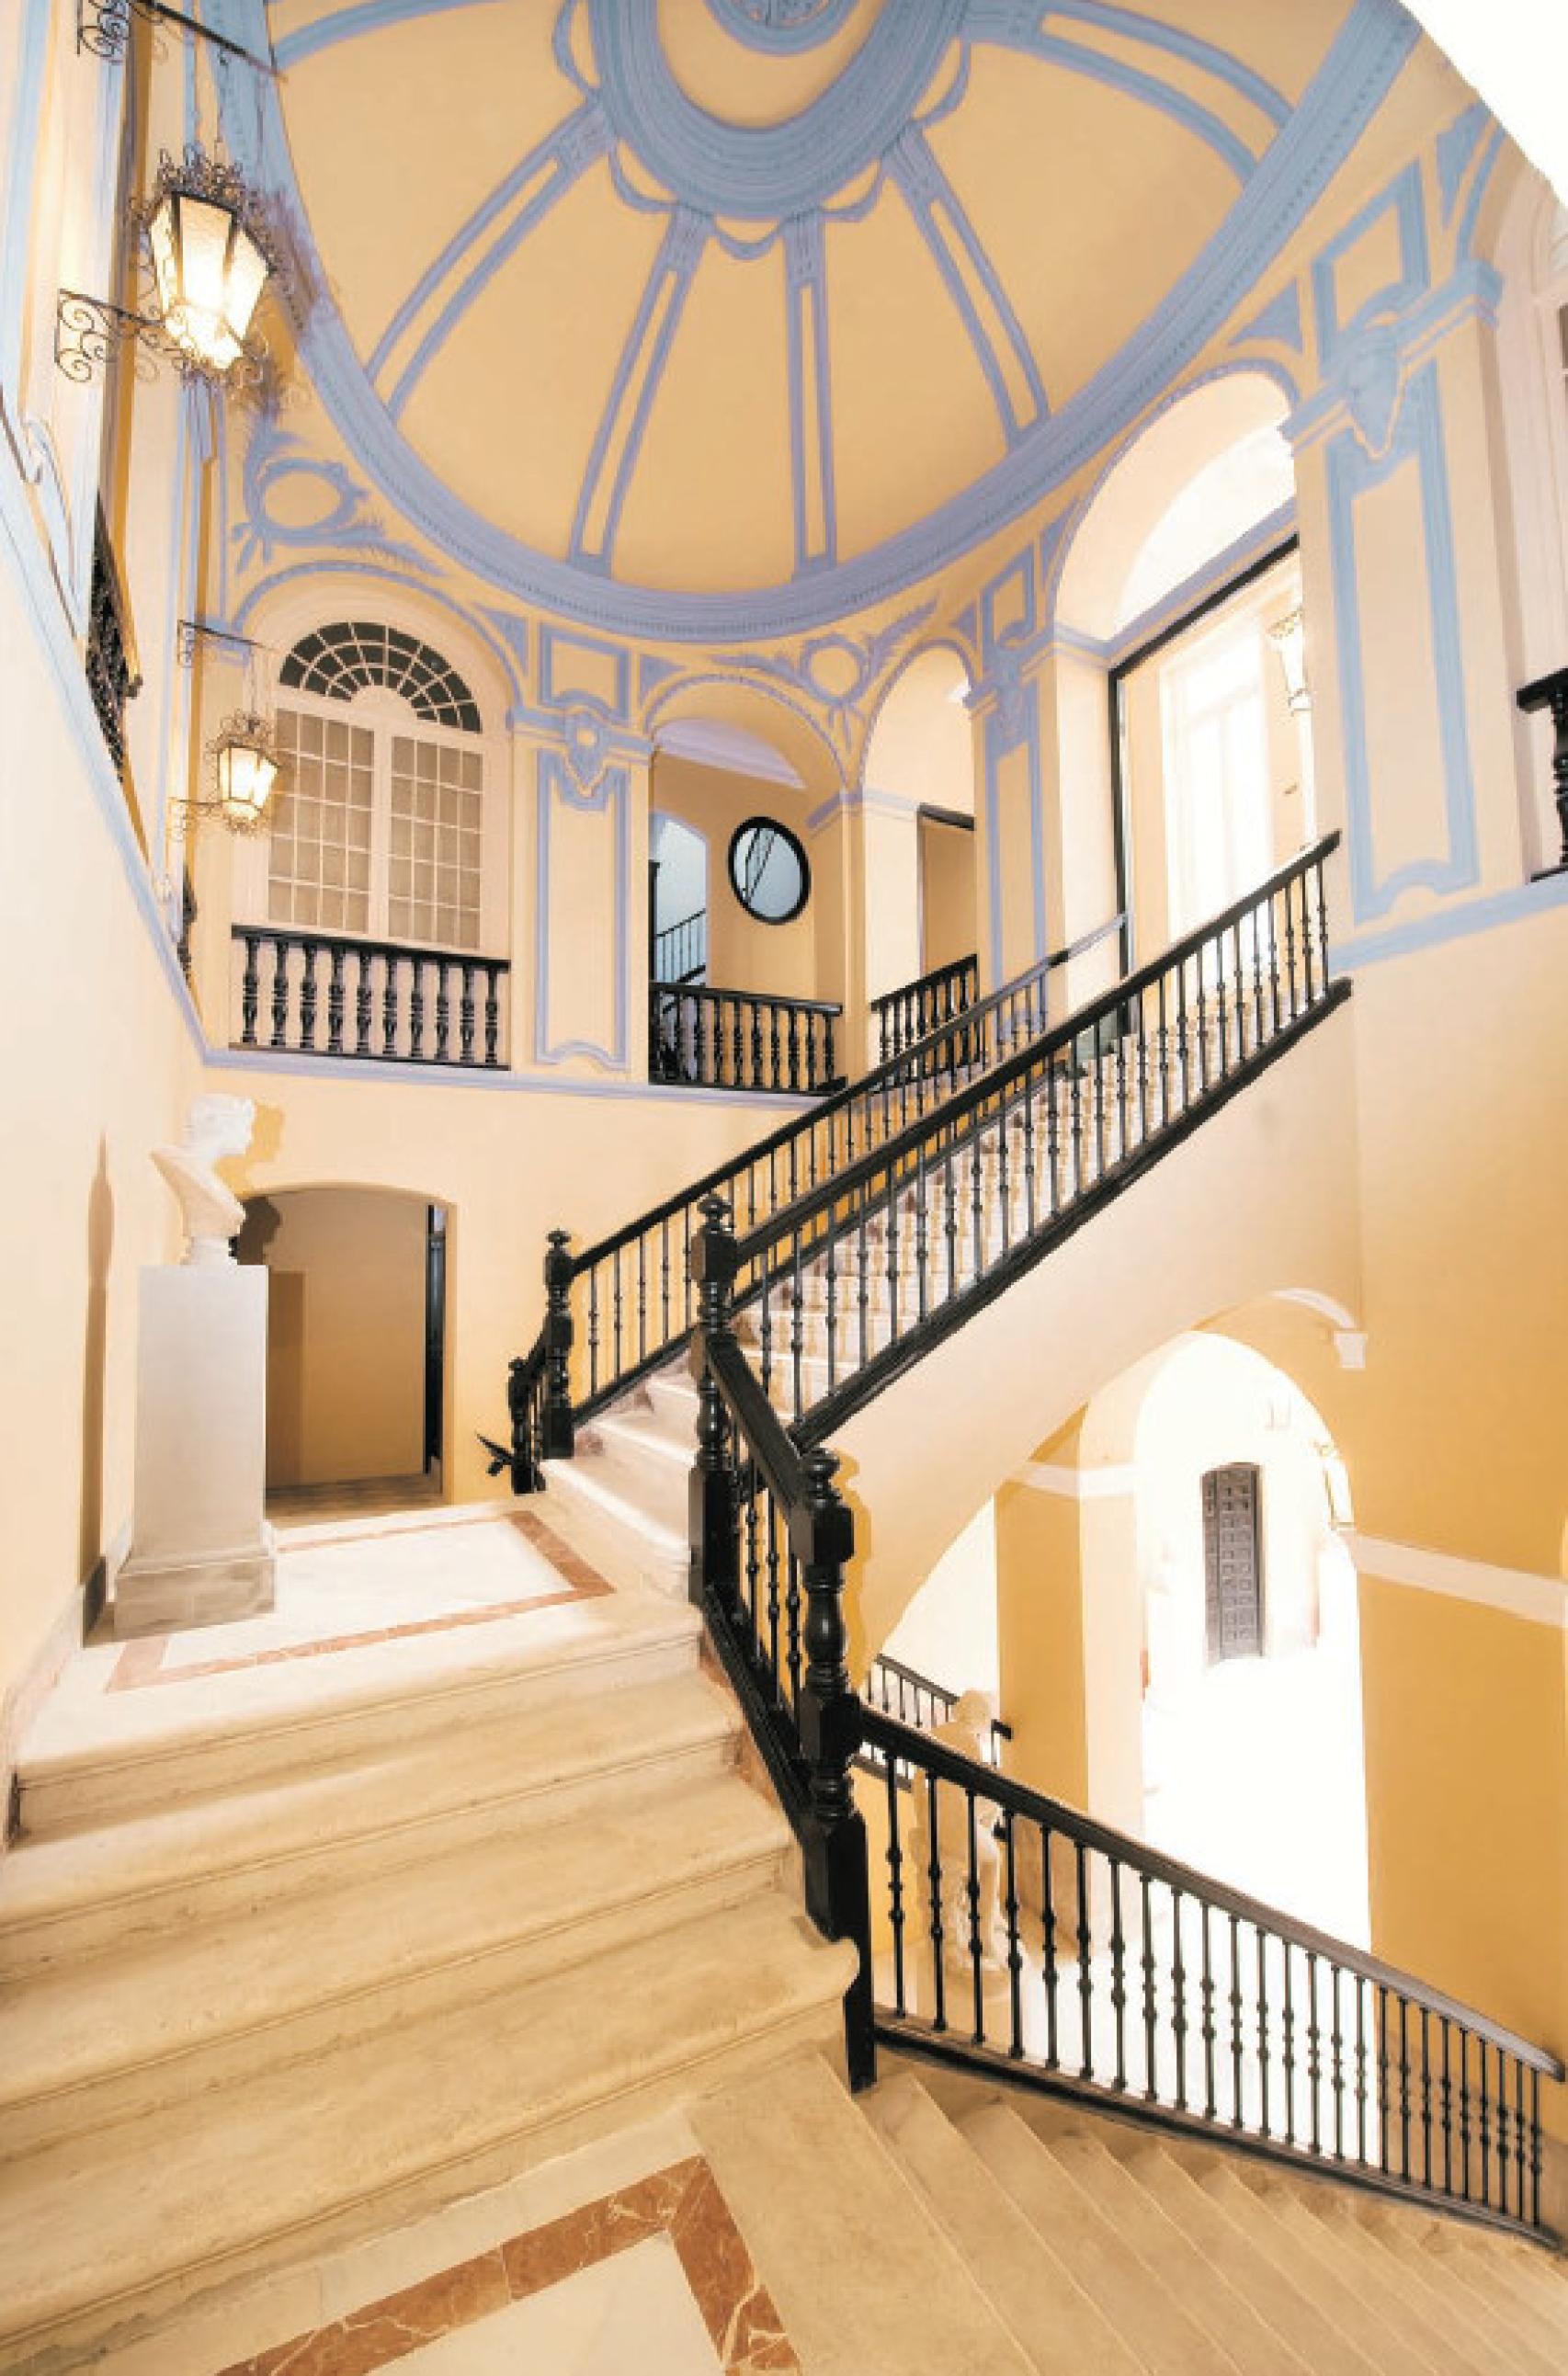 Escalinata del Palacio Trinidad Grund de Málaga.